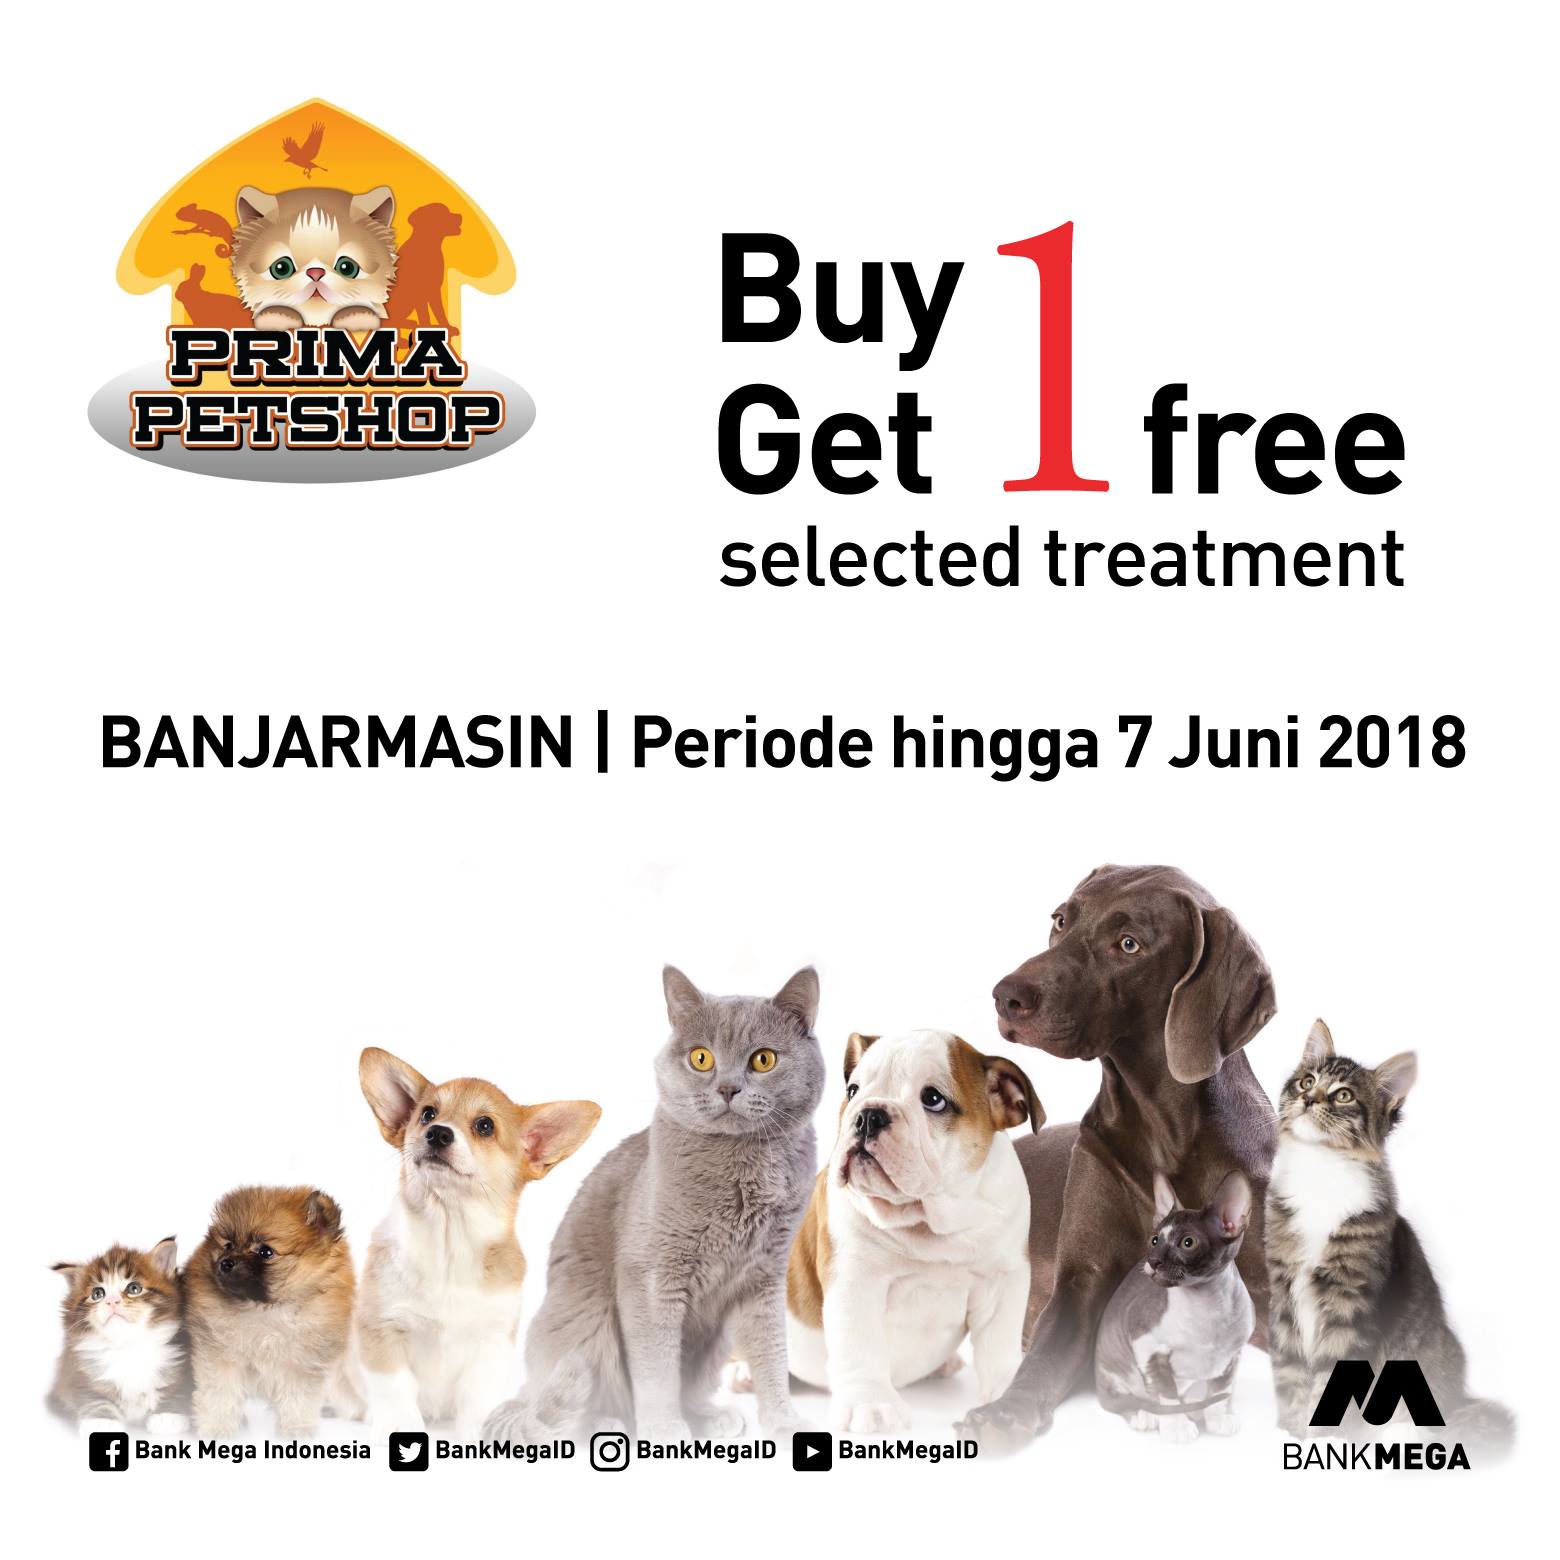 PT Bank Mega Tbk on Twitter "Punya hewan kesayangan yuk berikan kebutuhan nya di Prima Pet Banjarmasin untuk treatment yg baik dr Prima Pet & hemat